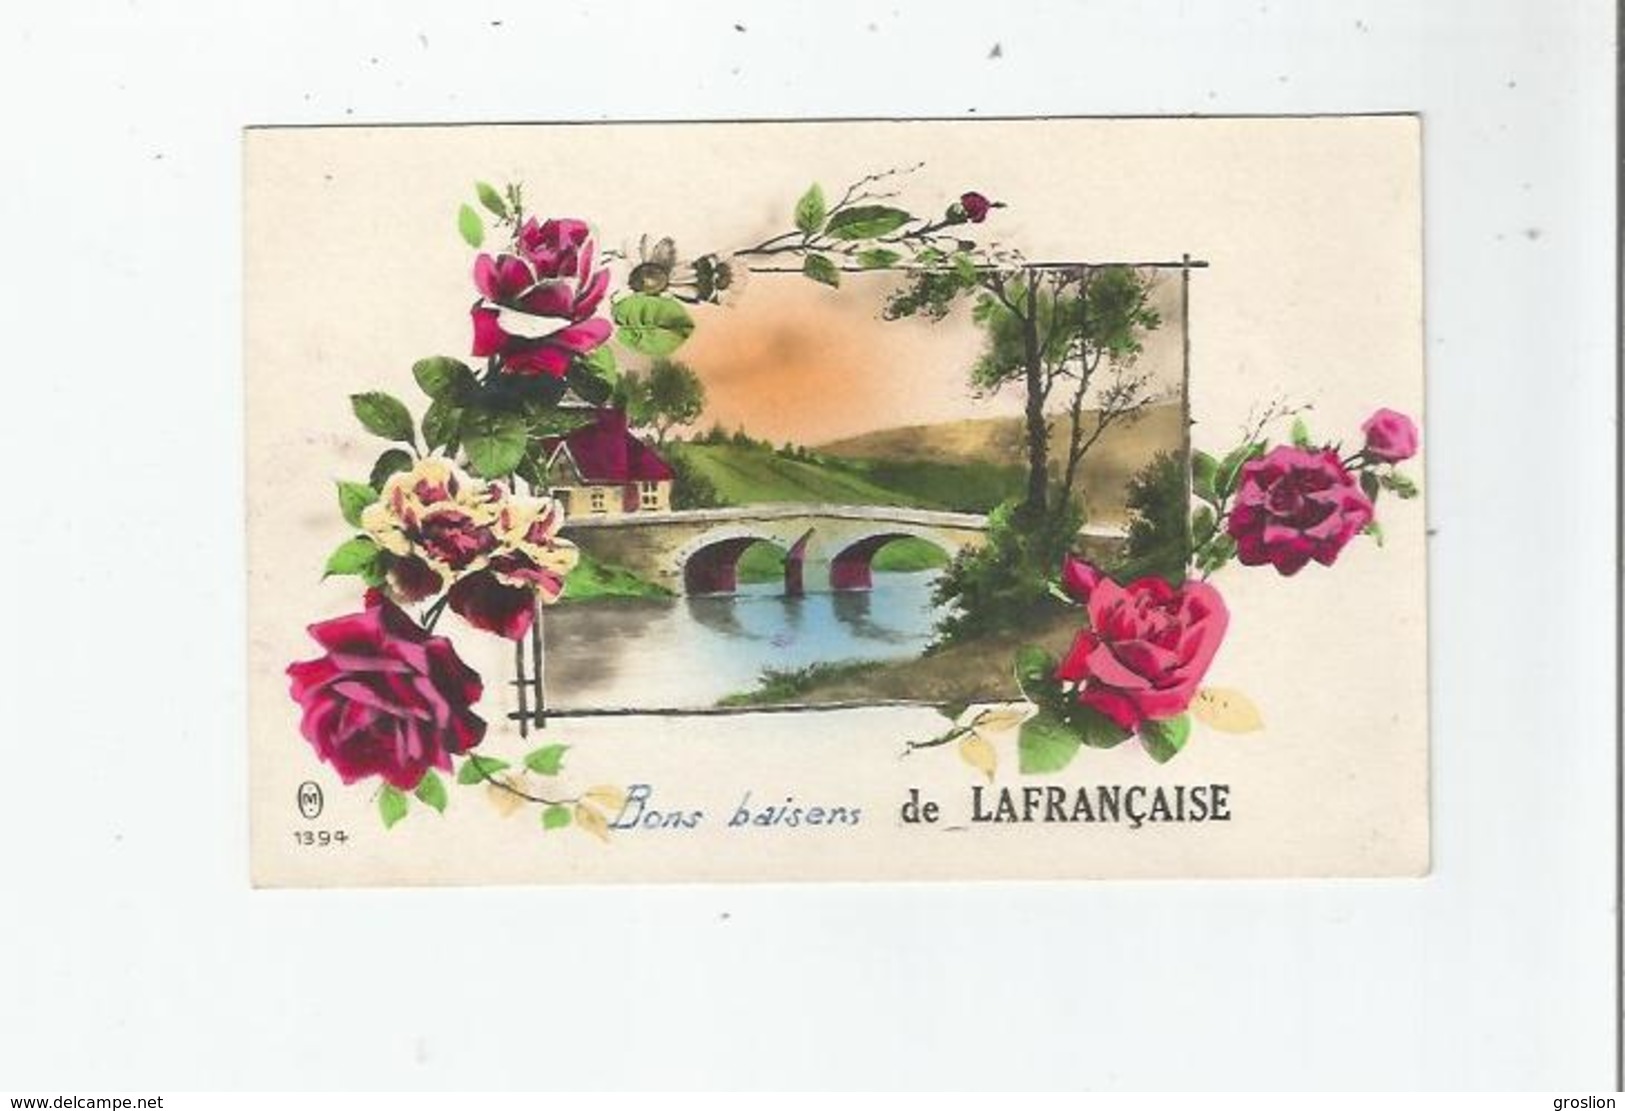 LAFRANCAISE (TARN ET GARONNE) CARTE FANTAISIE BONS BAISERS DE LAFRANCAISE 1394 (ROSES ET PAYSAGE) - Lafrancaise